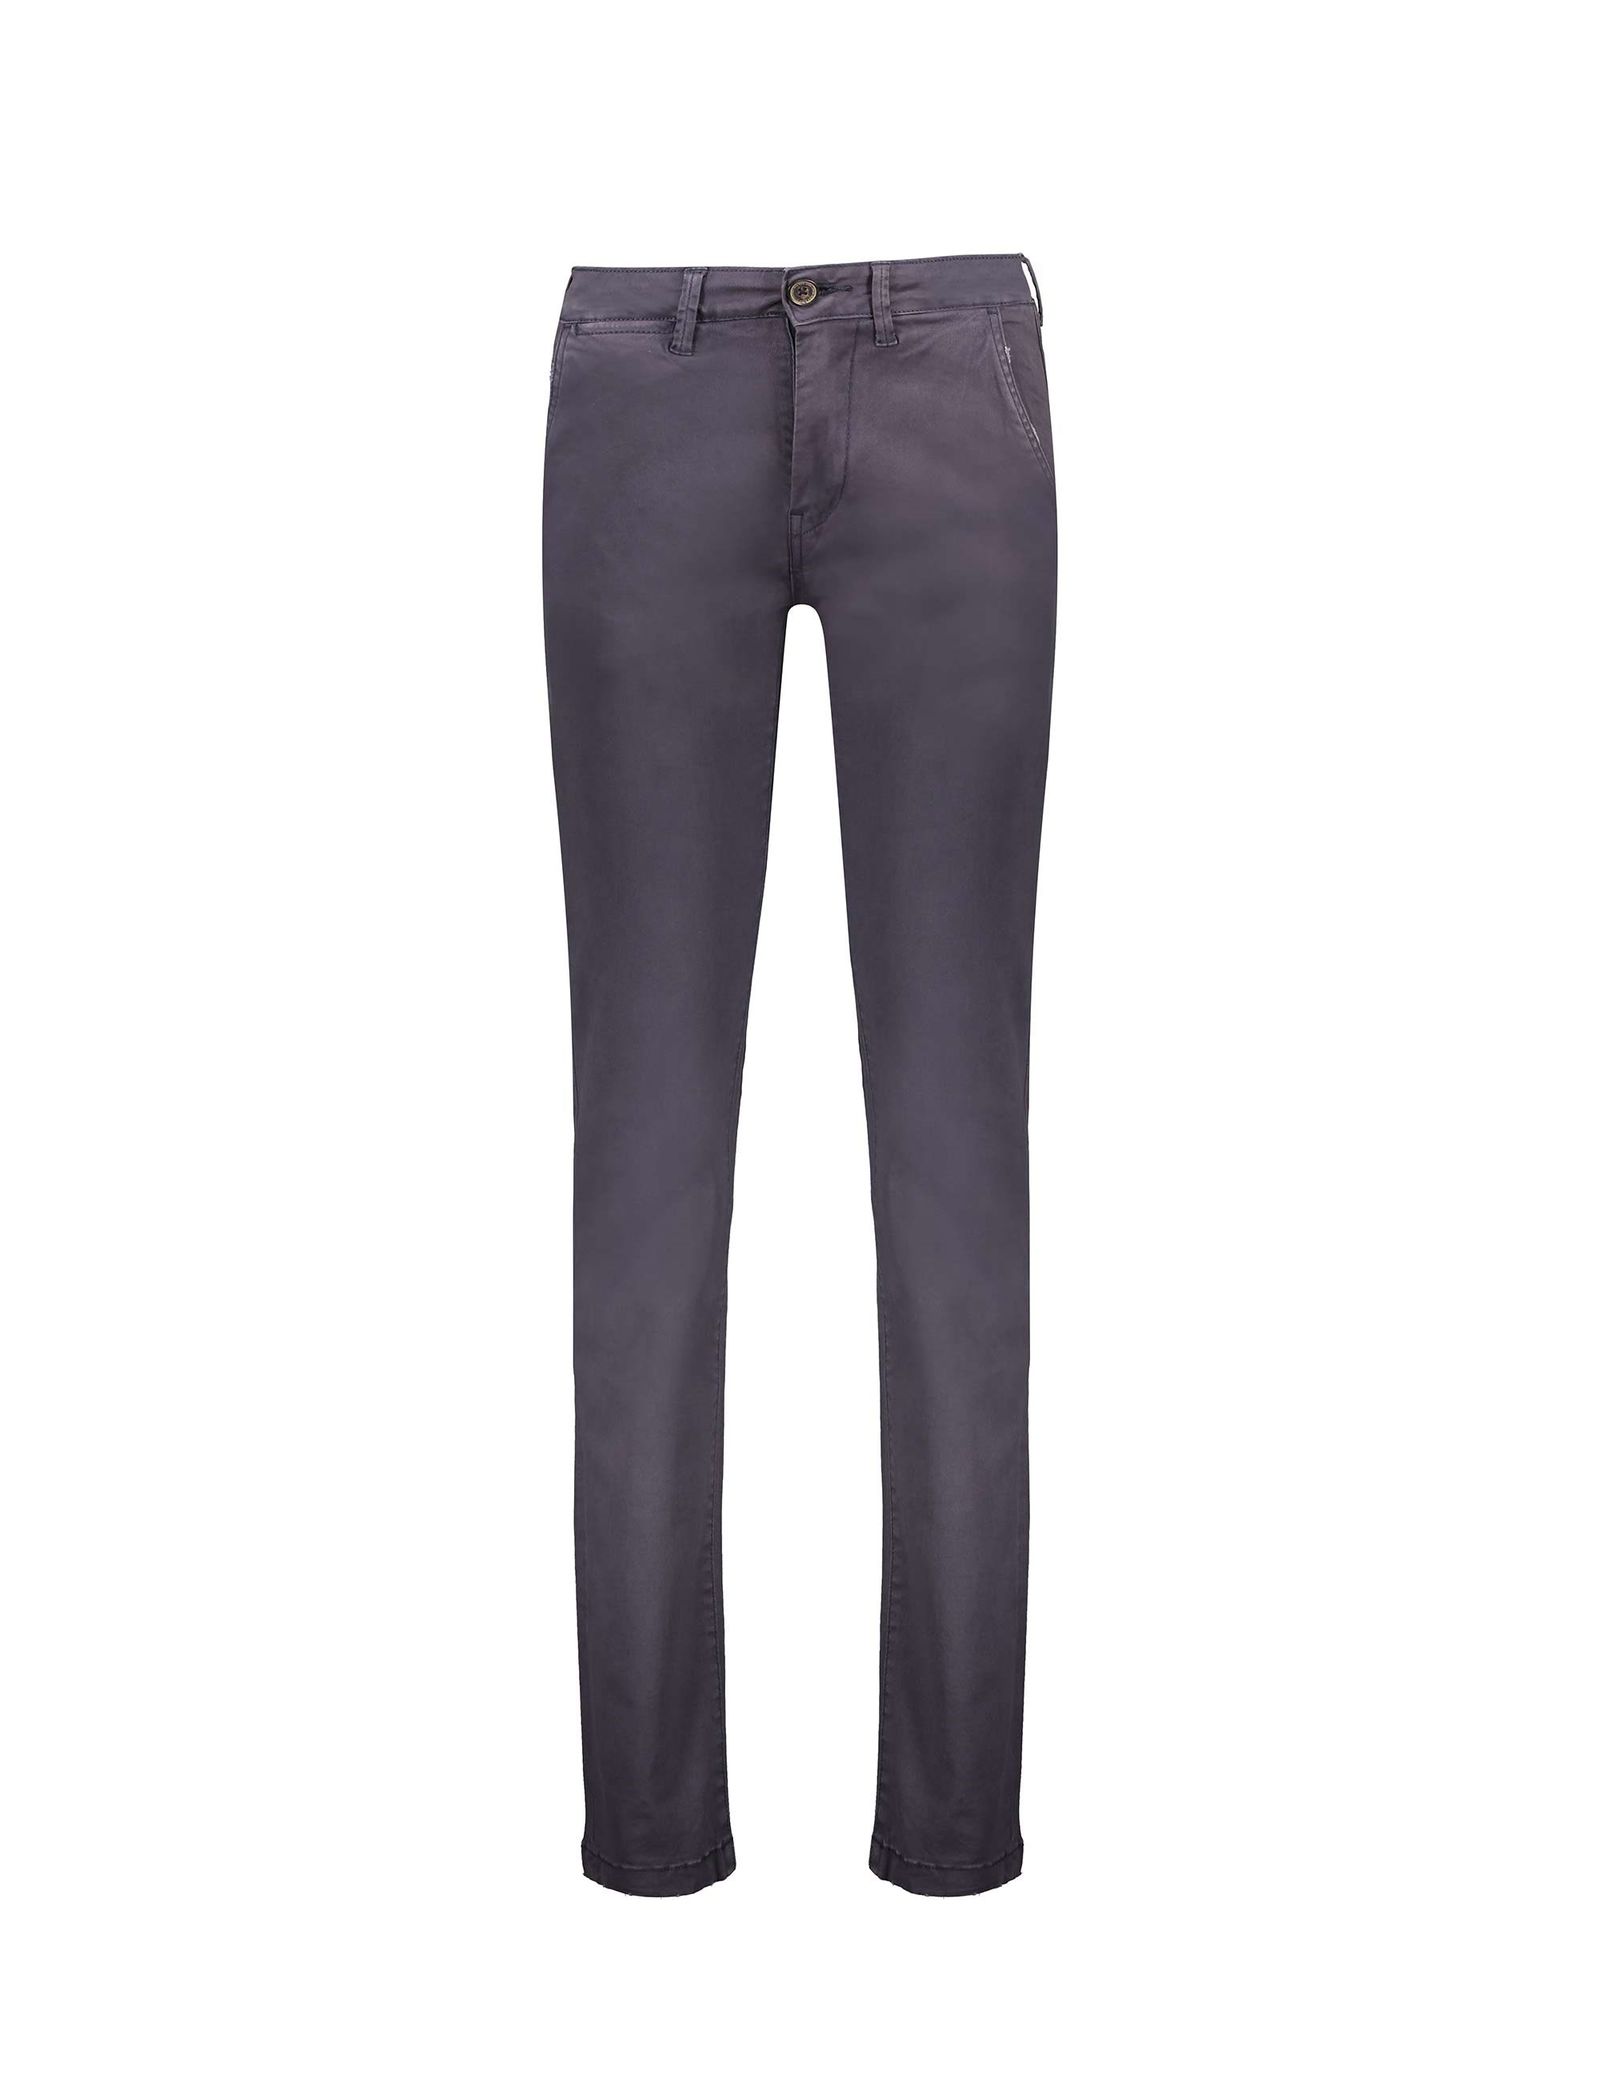 شلوار جین راسته مردانه Sloane - پپه جینز - زغالي - 2